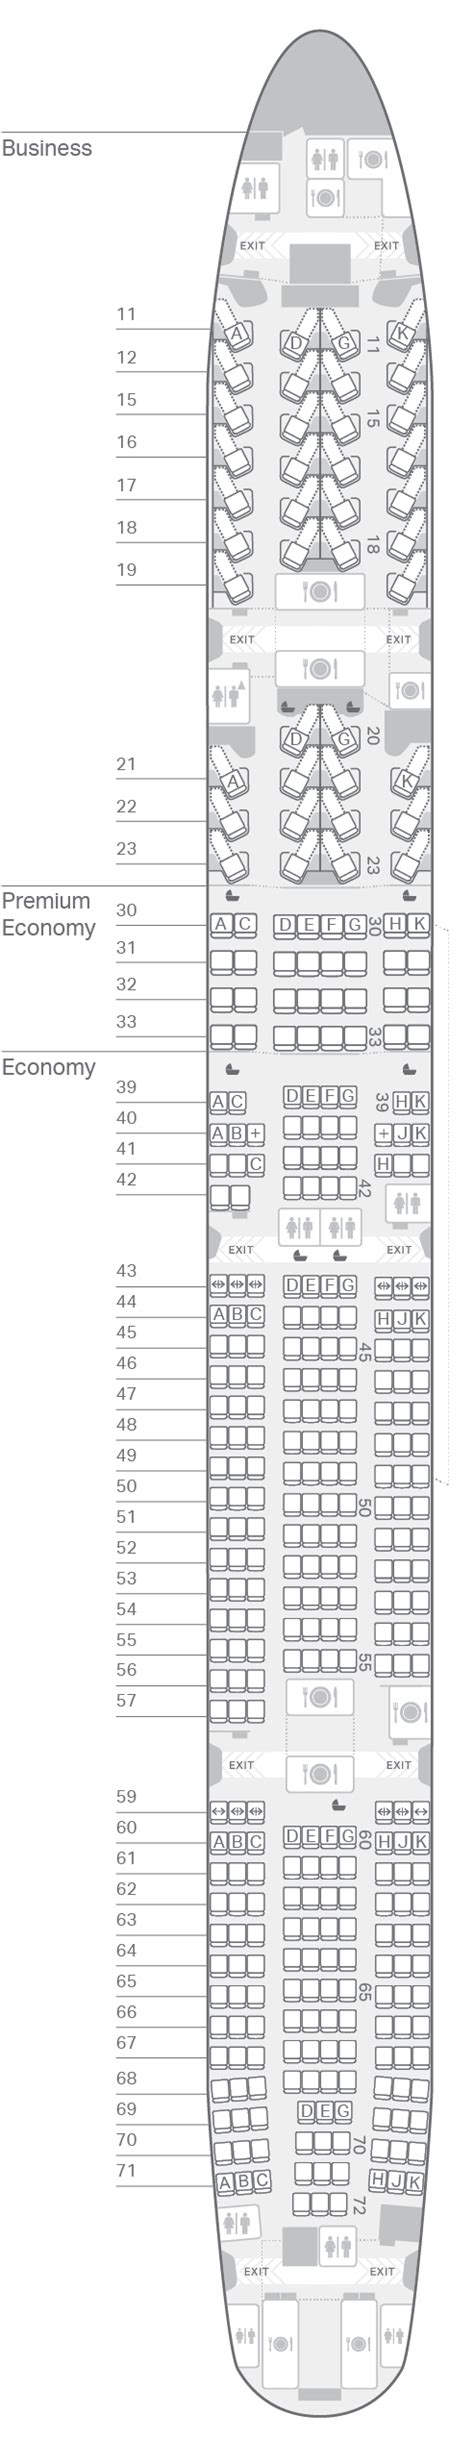 Airbus Er Seating Plan Infoupdate Org